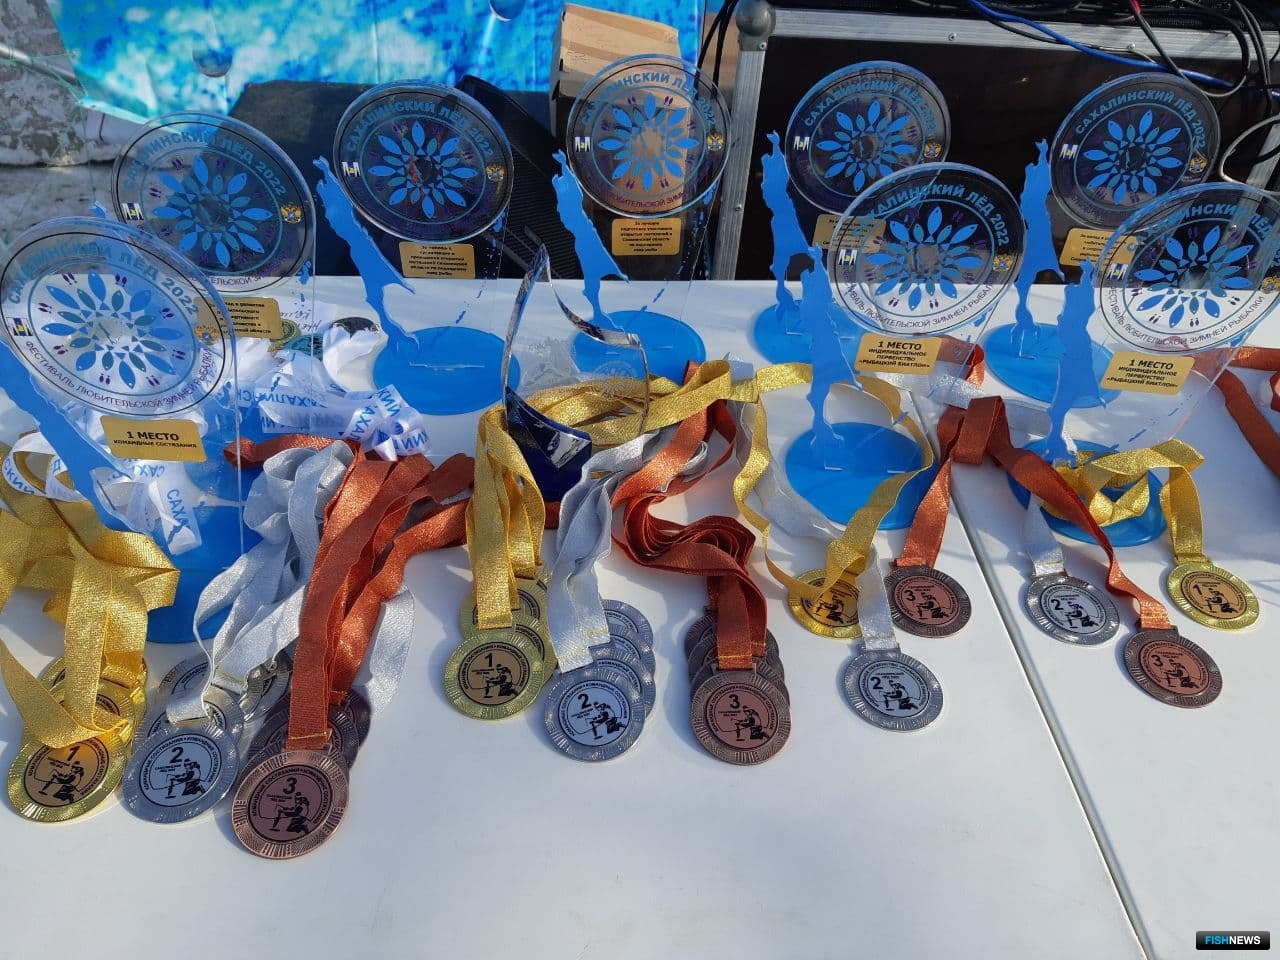 Кубки и медали — далеко не все награды для участников «Сахалинского льда». В этом году на соревнованиях было особенно много разных призов